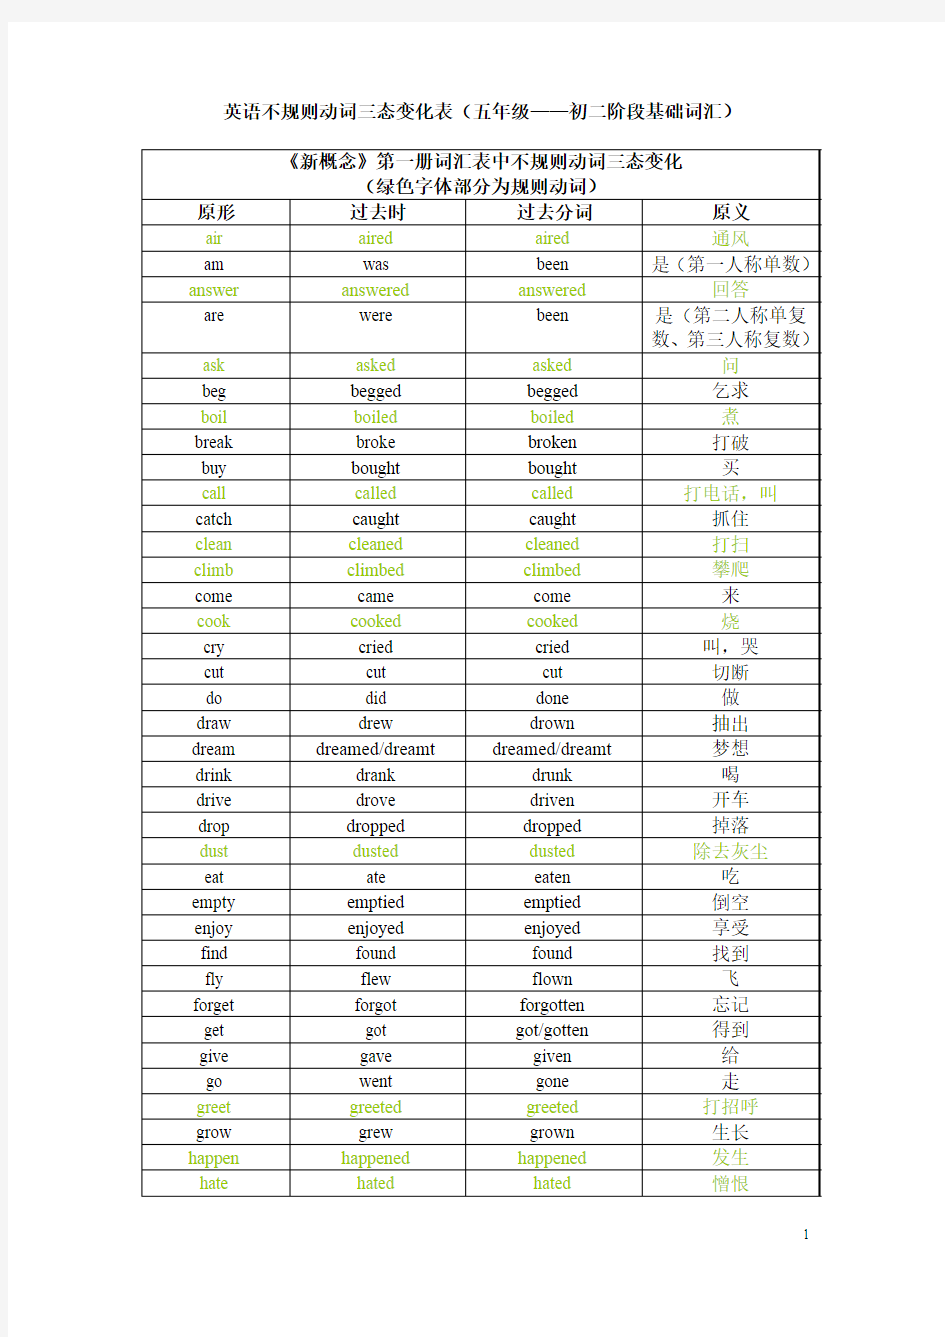 英语不规则动词三态变化表(五年级至初二阶段基础部分)